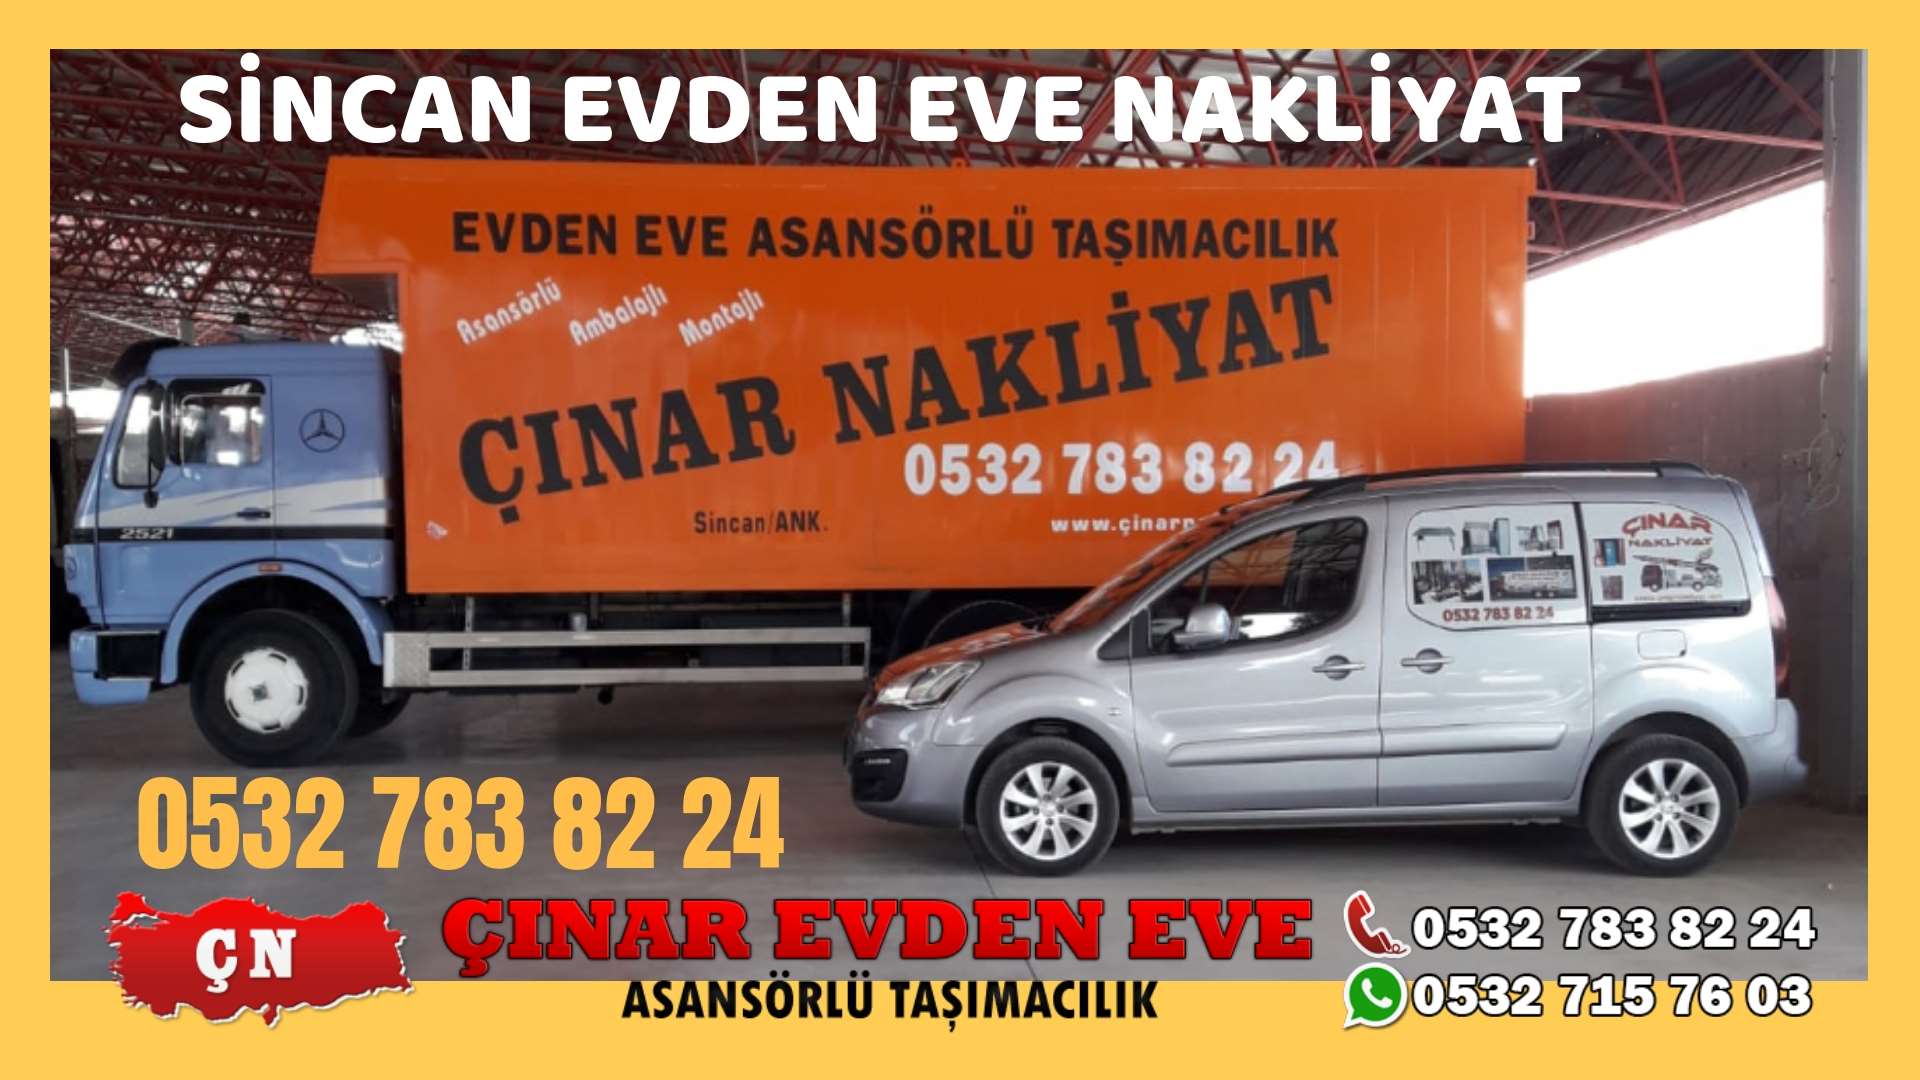 Ankara Eryaman Evden eve ev taşıma sincan nakliye fiyatları 0532 715 76 03